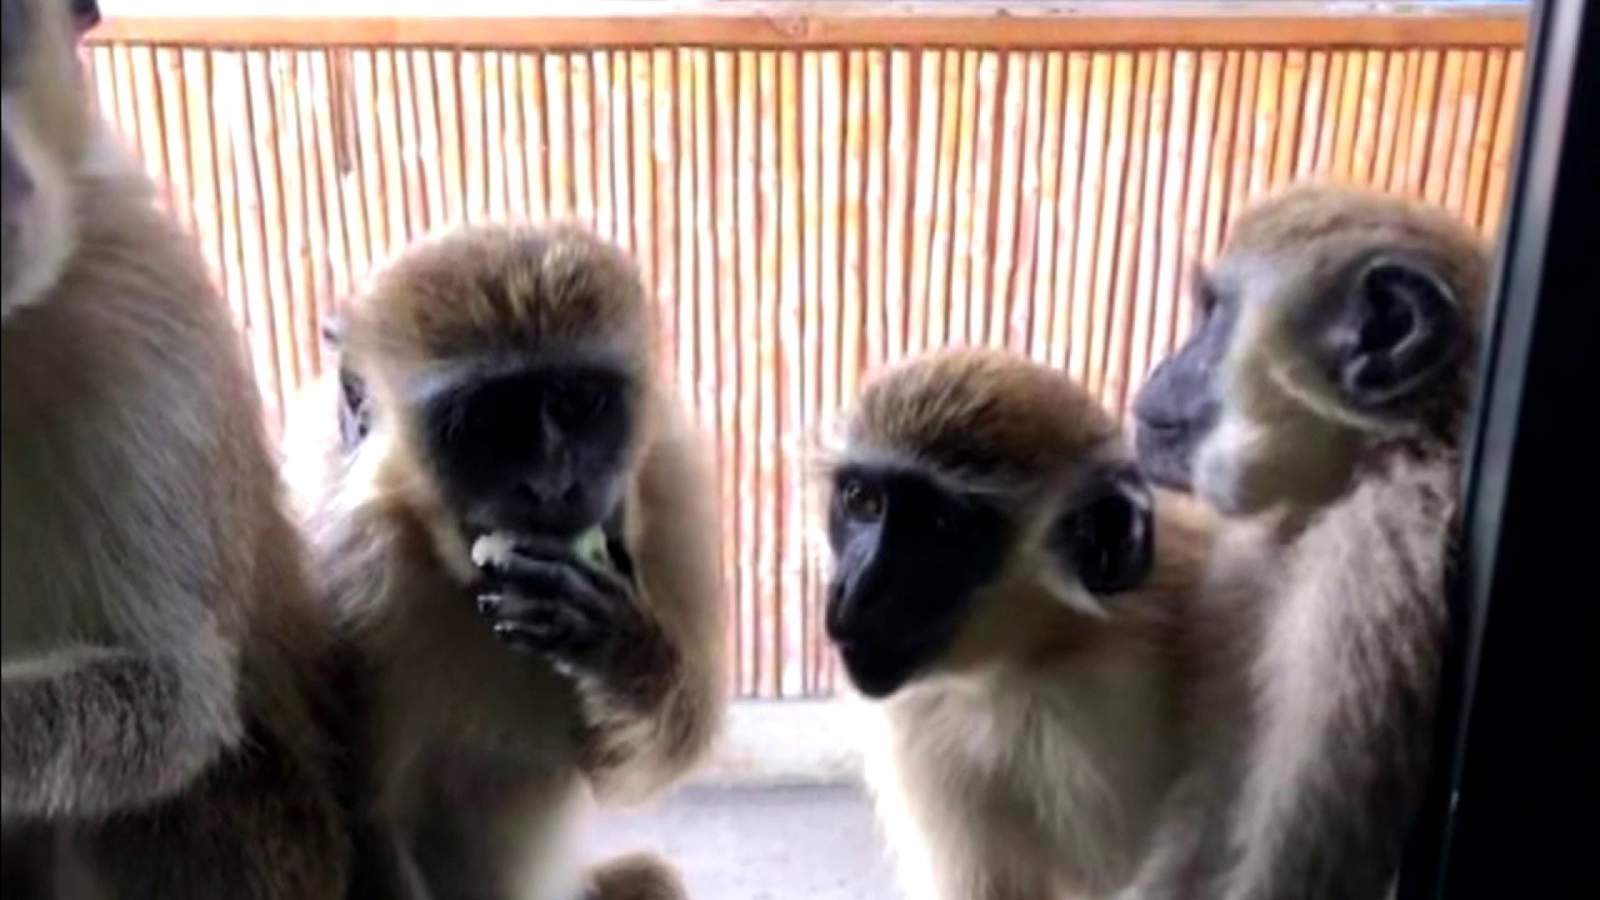 Cerca del aeropuerto de Florida crece una colonia de monos muy amigables (Video)